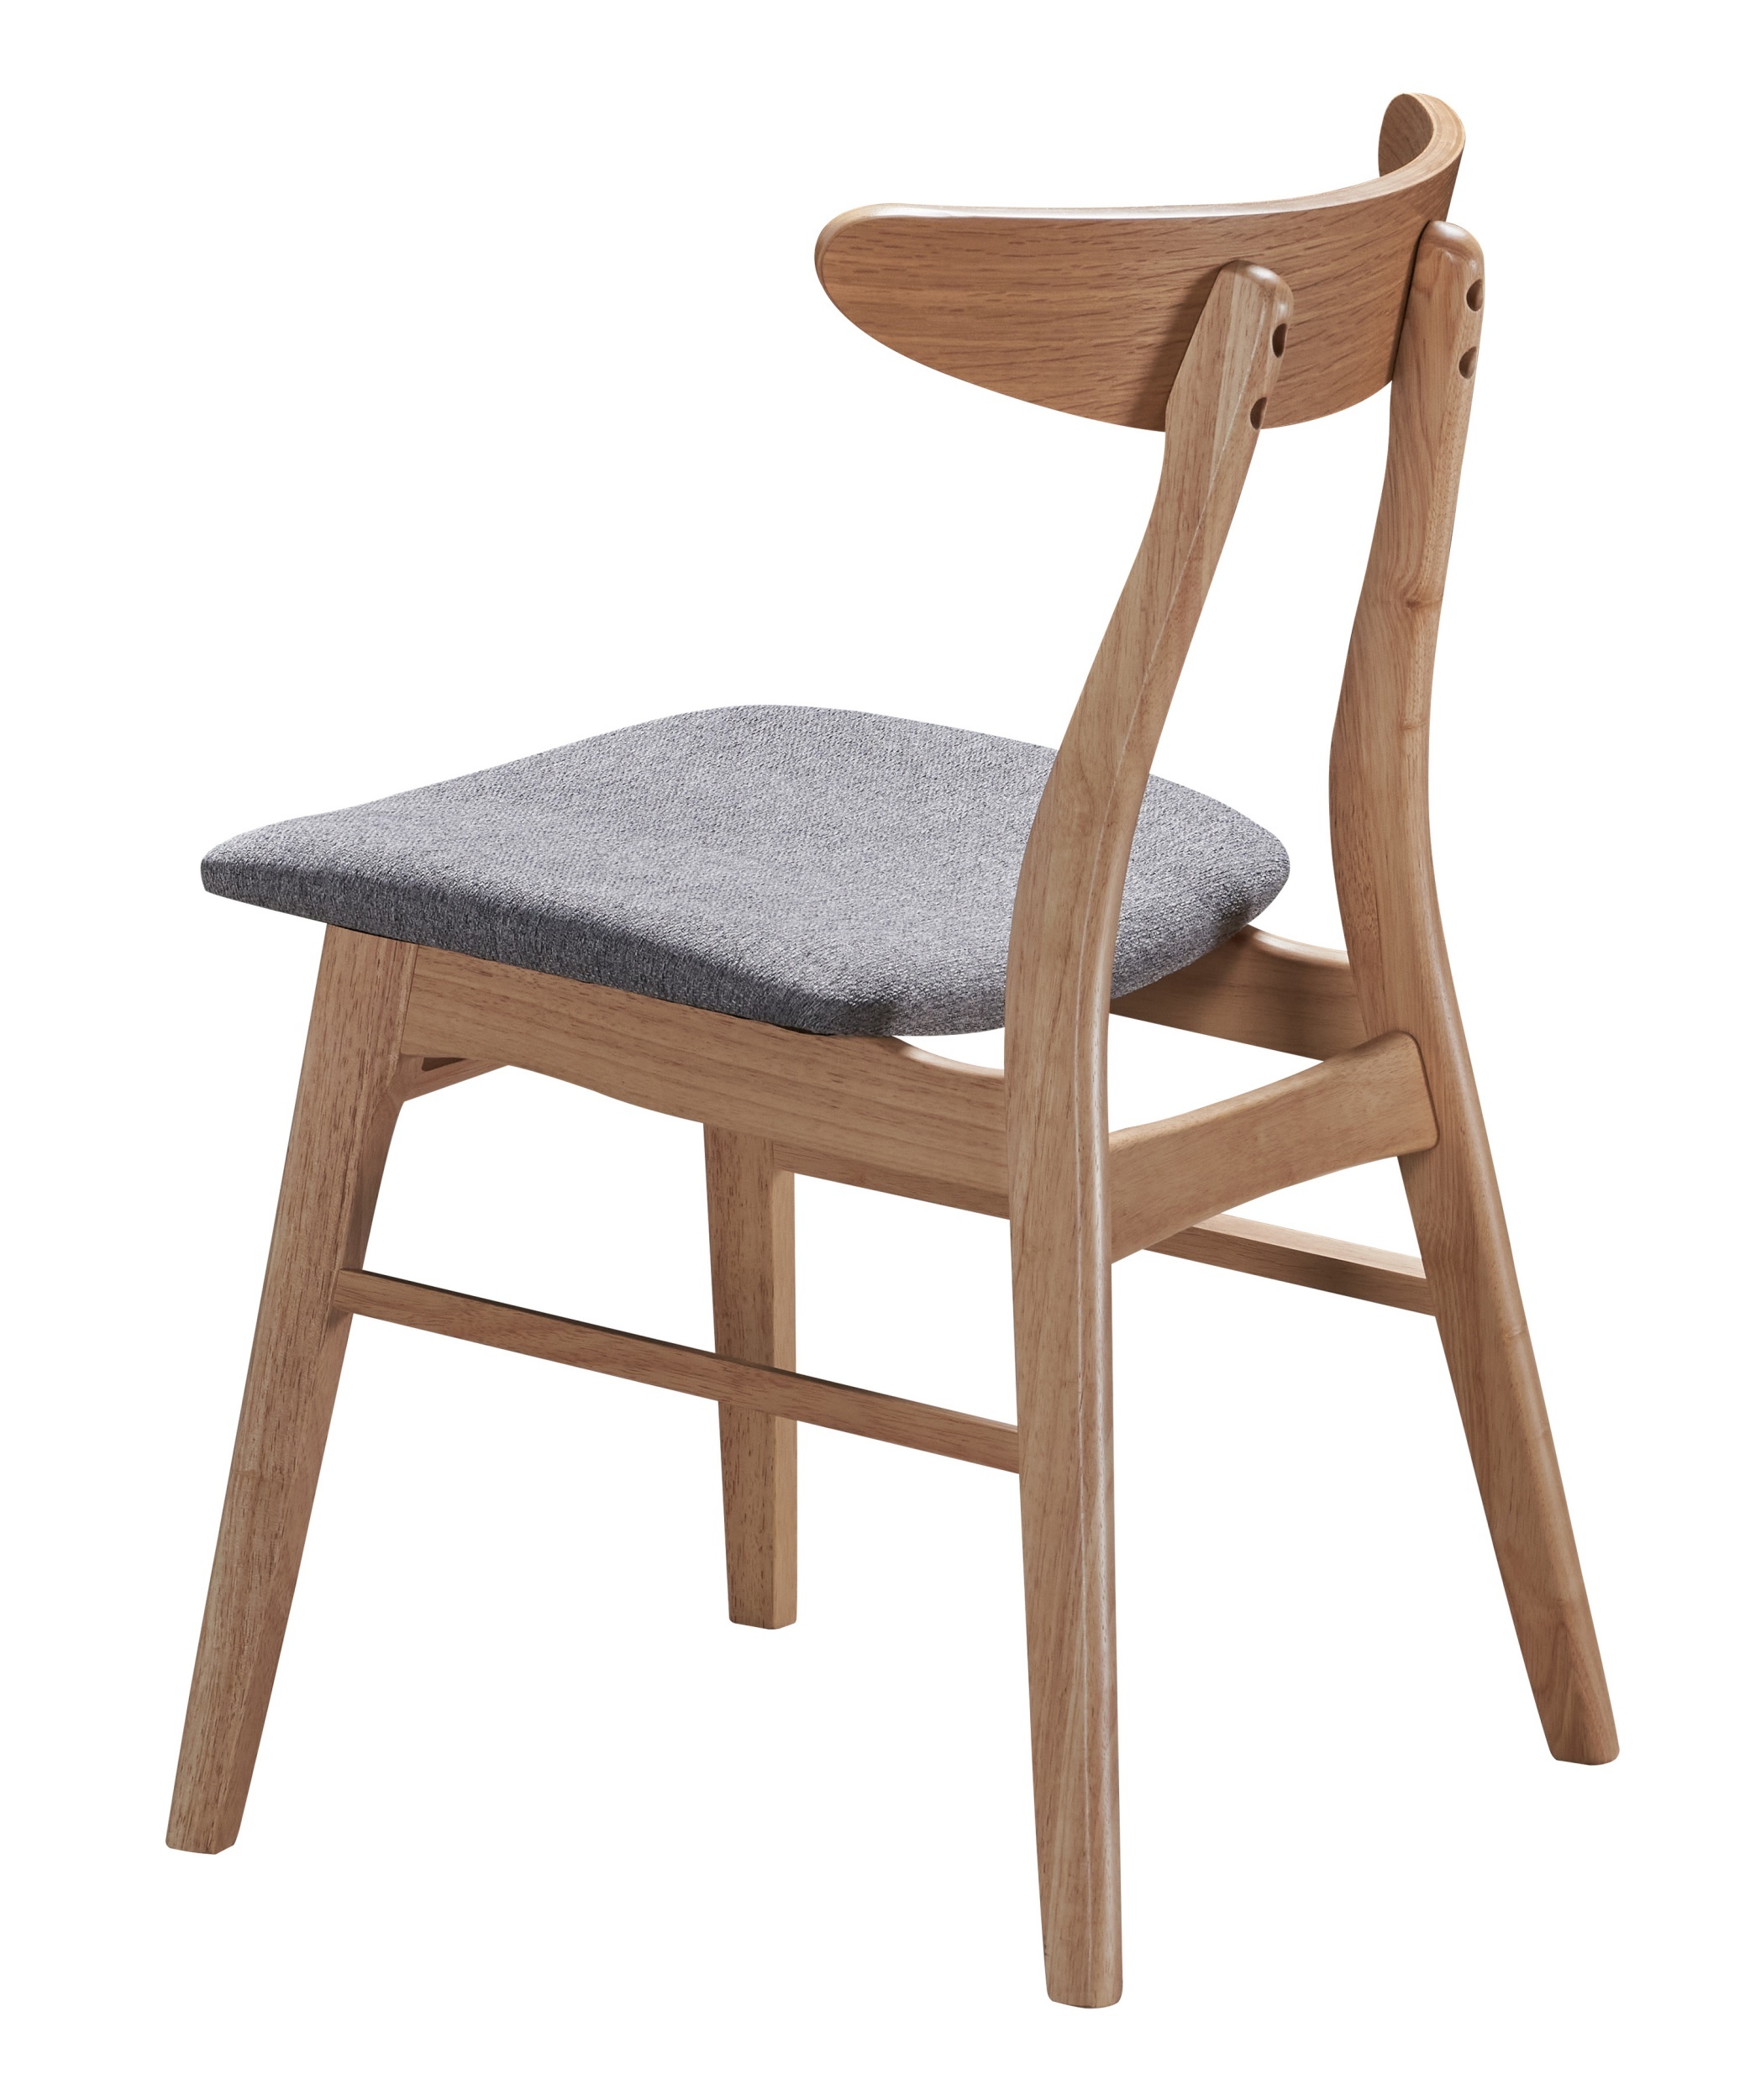 Krzesło drewniane Gooddly dąb naturalny/szare